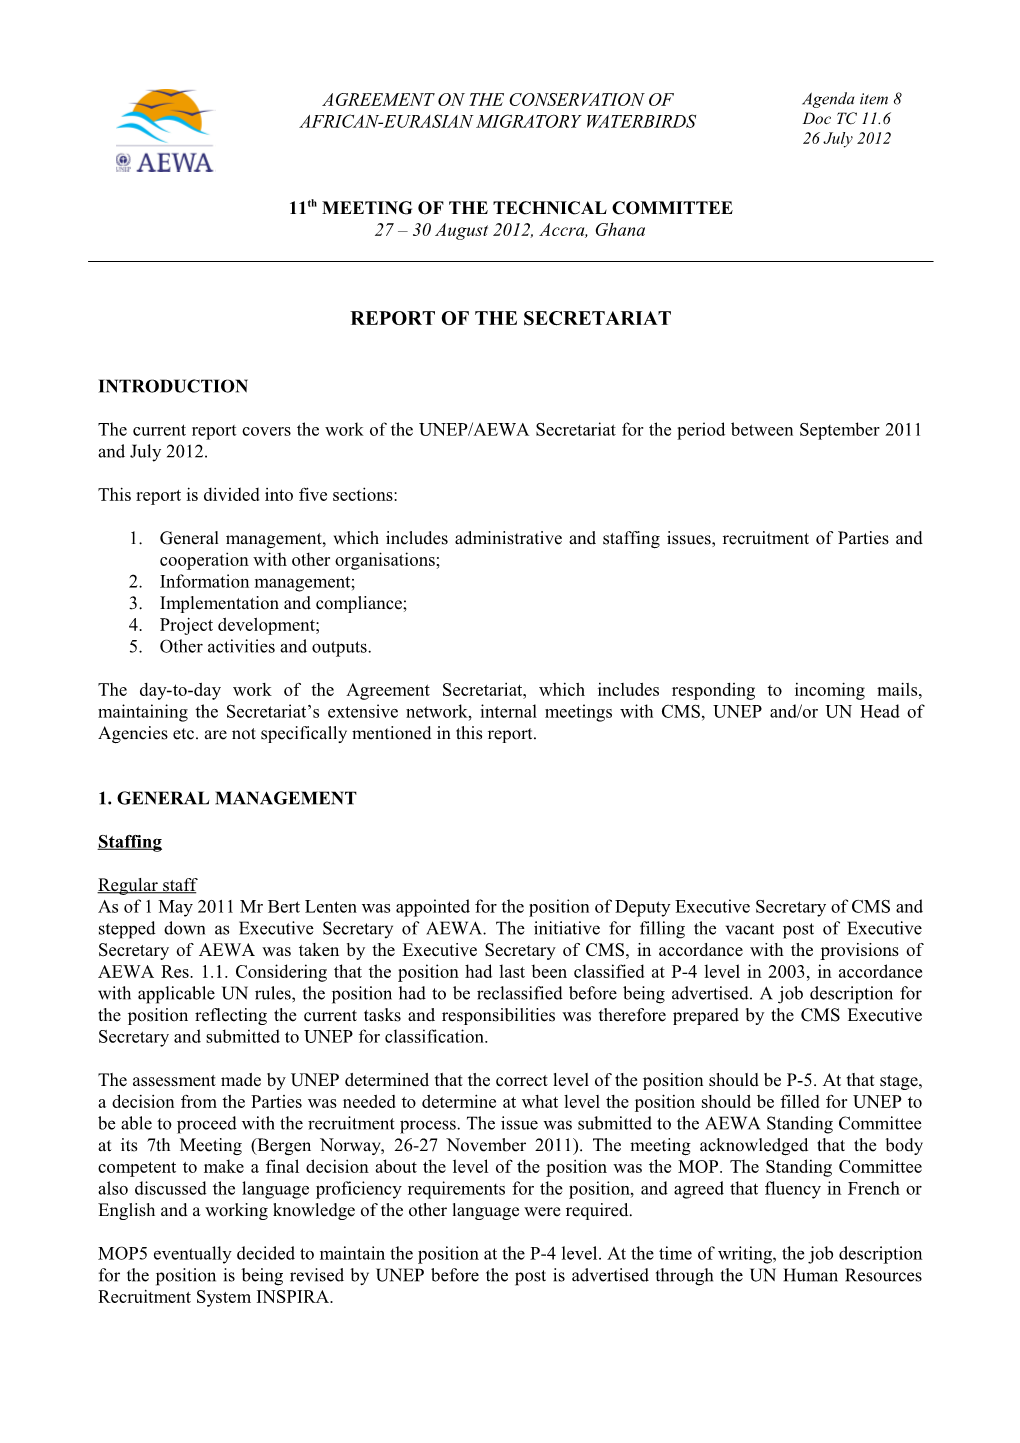 Report of the Secretariat